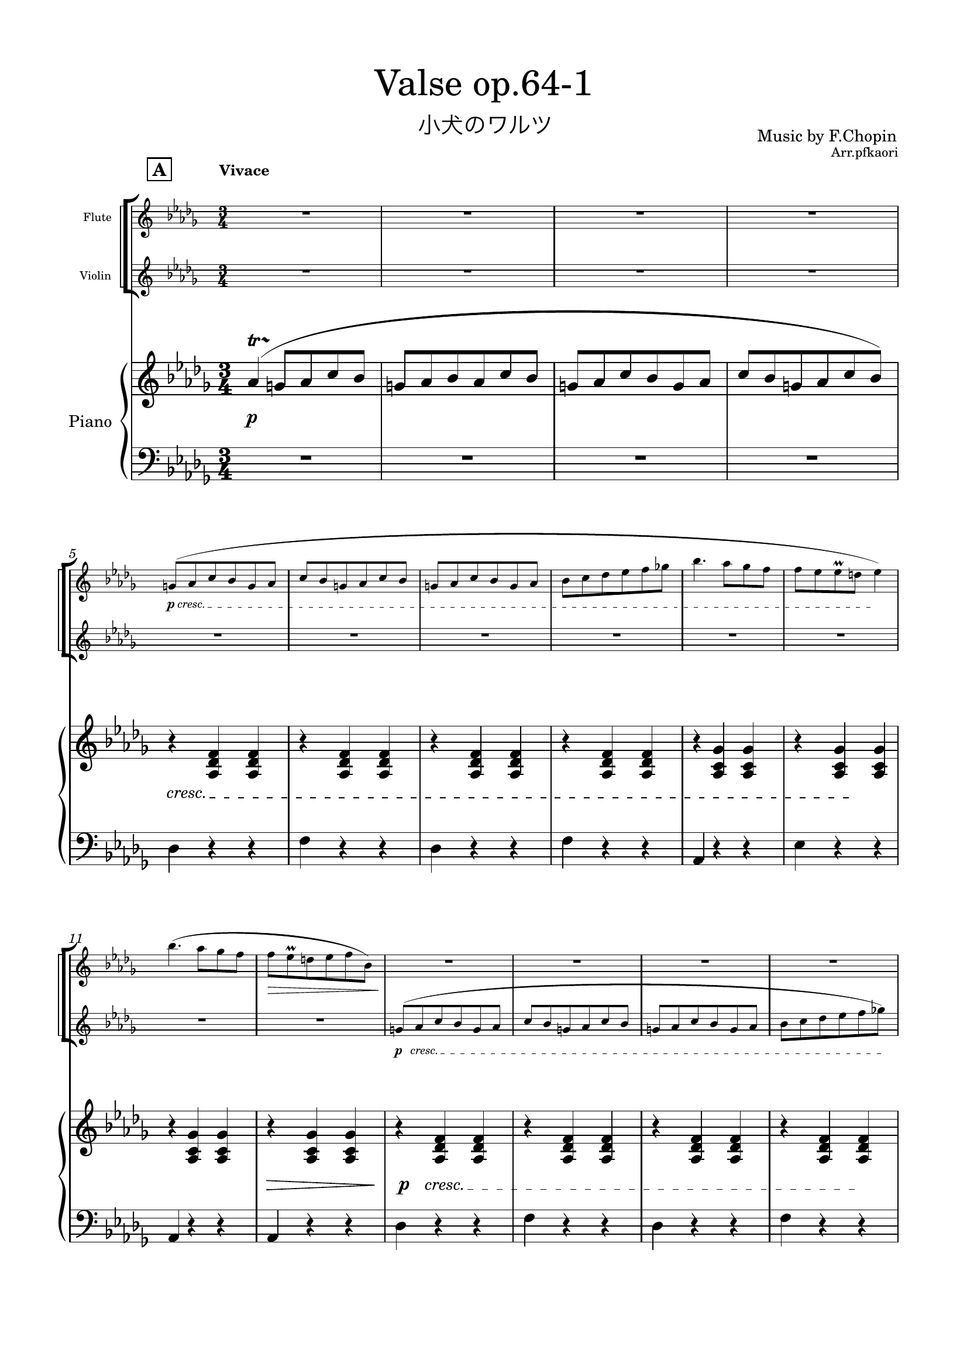 ショパン - 小犬のワルツ (1版/Des・ピアノトリオ/フルート&ヴァイオリン) by pfkaori